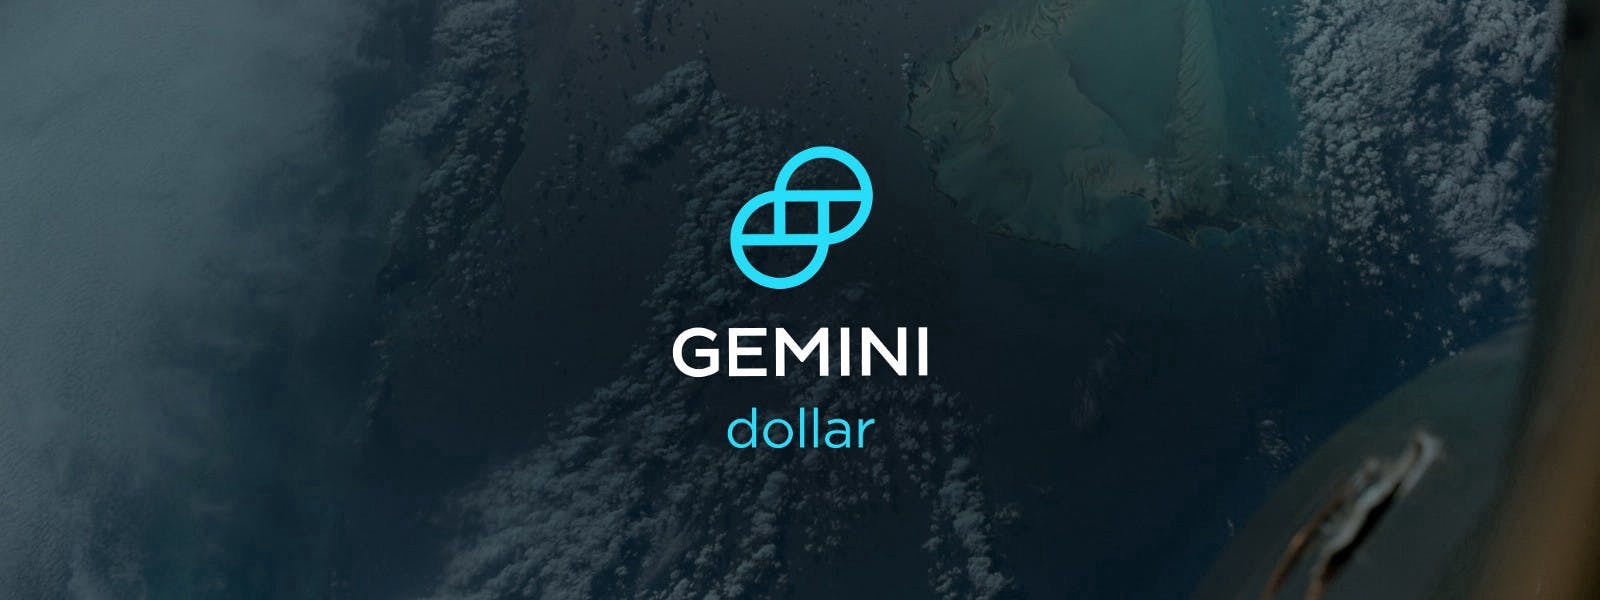 /the-gemini-dollar-a-real-use-case-9f1cd9e06f1e feature image